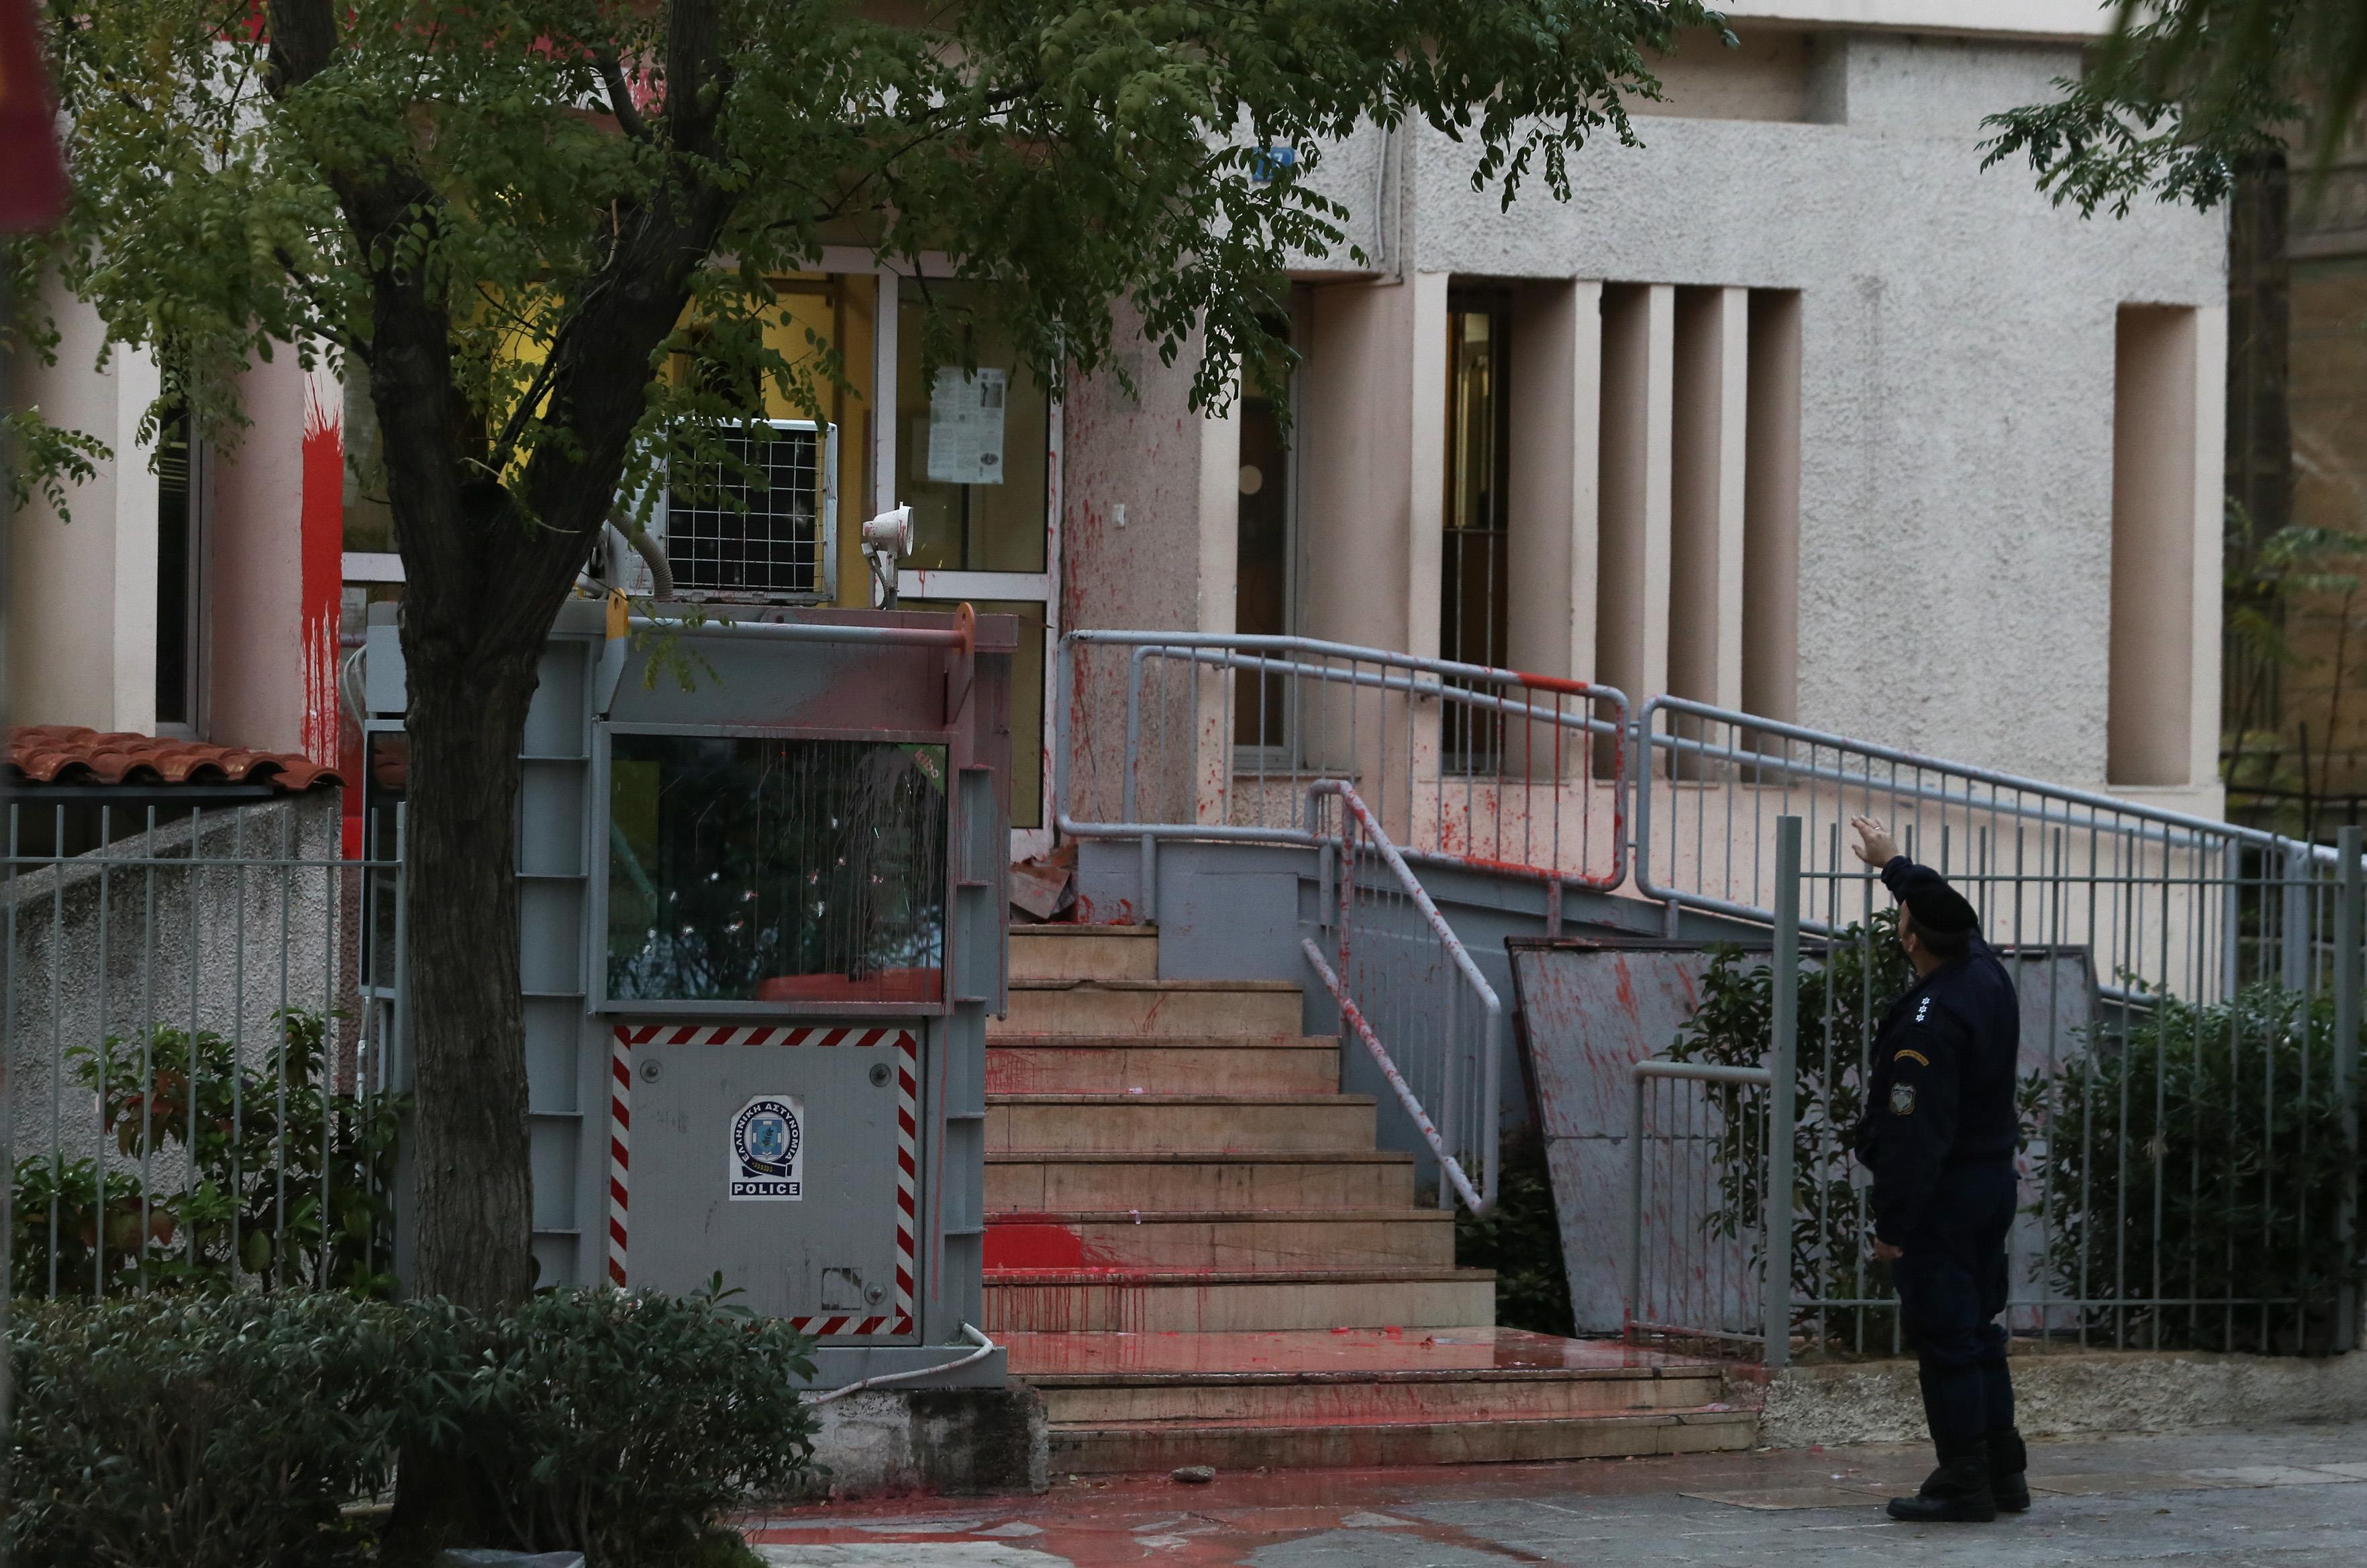 Ανάληψη ευθύνης για την επίθεση στο αστυνομικό τμήμα Πατησίων